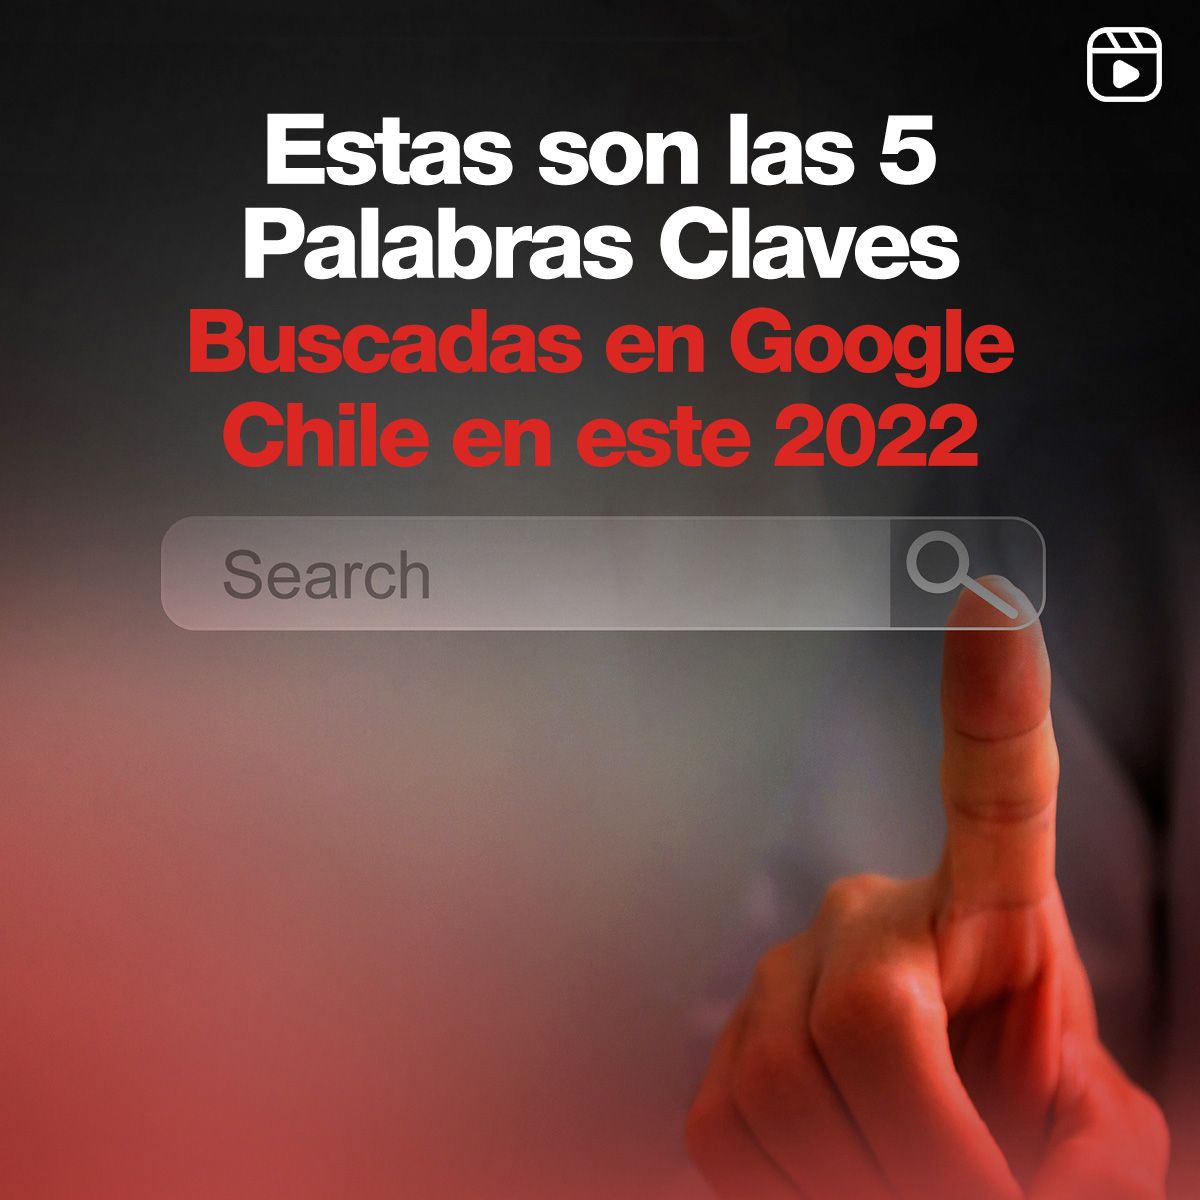 Estas son las 5 Palabras Claves Buscadas en Google Chile en este 2022